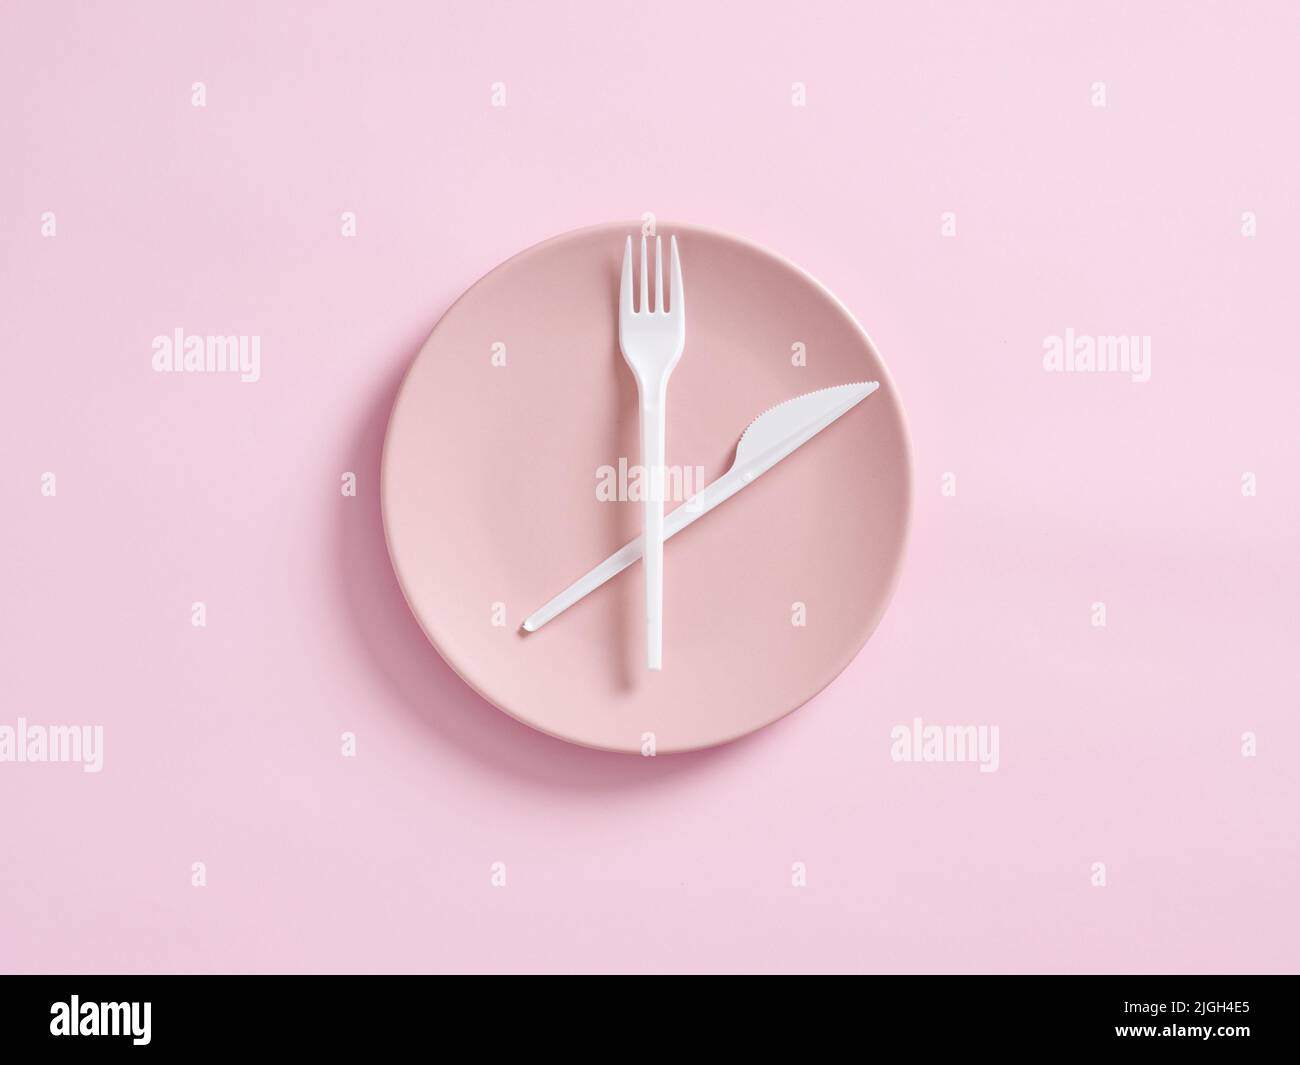 Couteau et fourchette sur plaque rose conçu comme horloge. Jeûne intermittent, déjeuner, perte de poids, plan de repas ou concept de régime. Banque D'Images